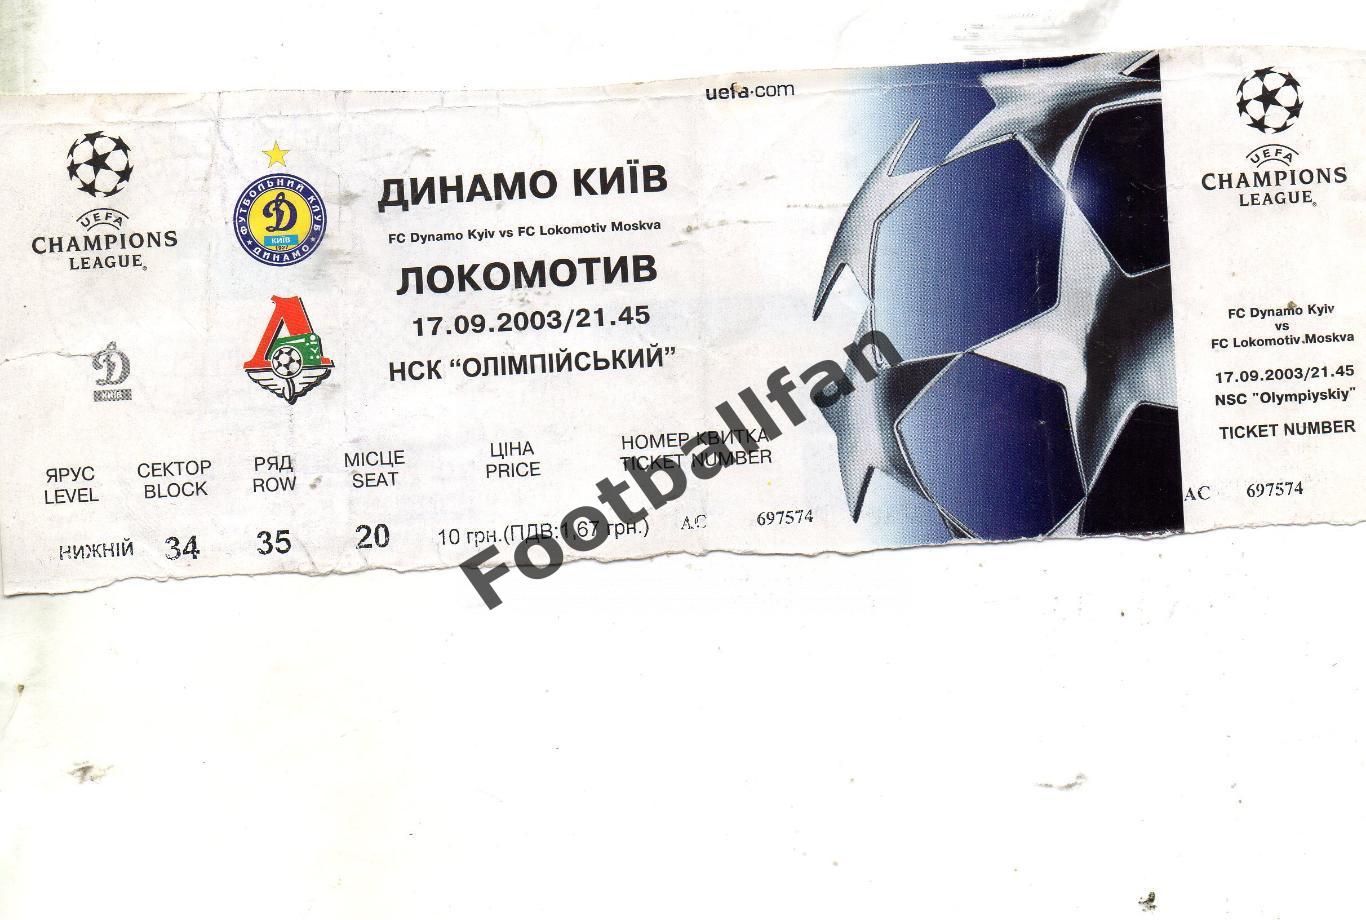 Динамо Киев , Украина - Локомотив Москва , Россия 17.09.2003